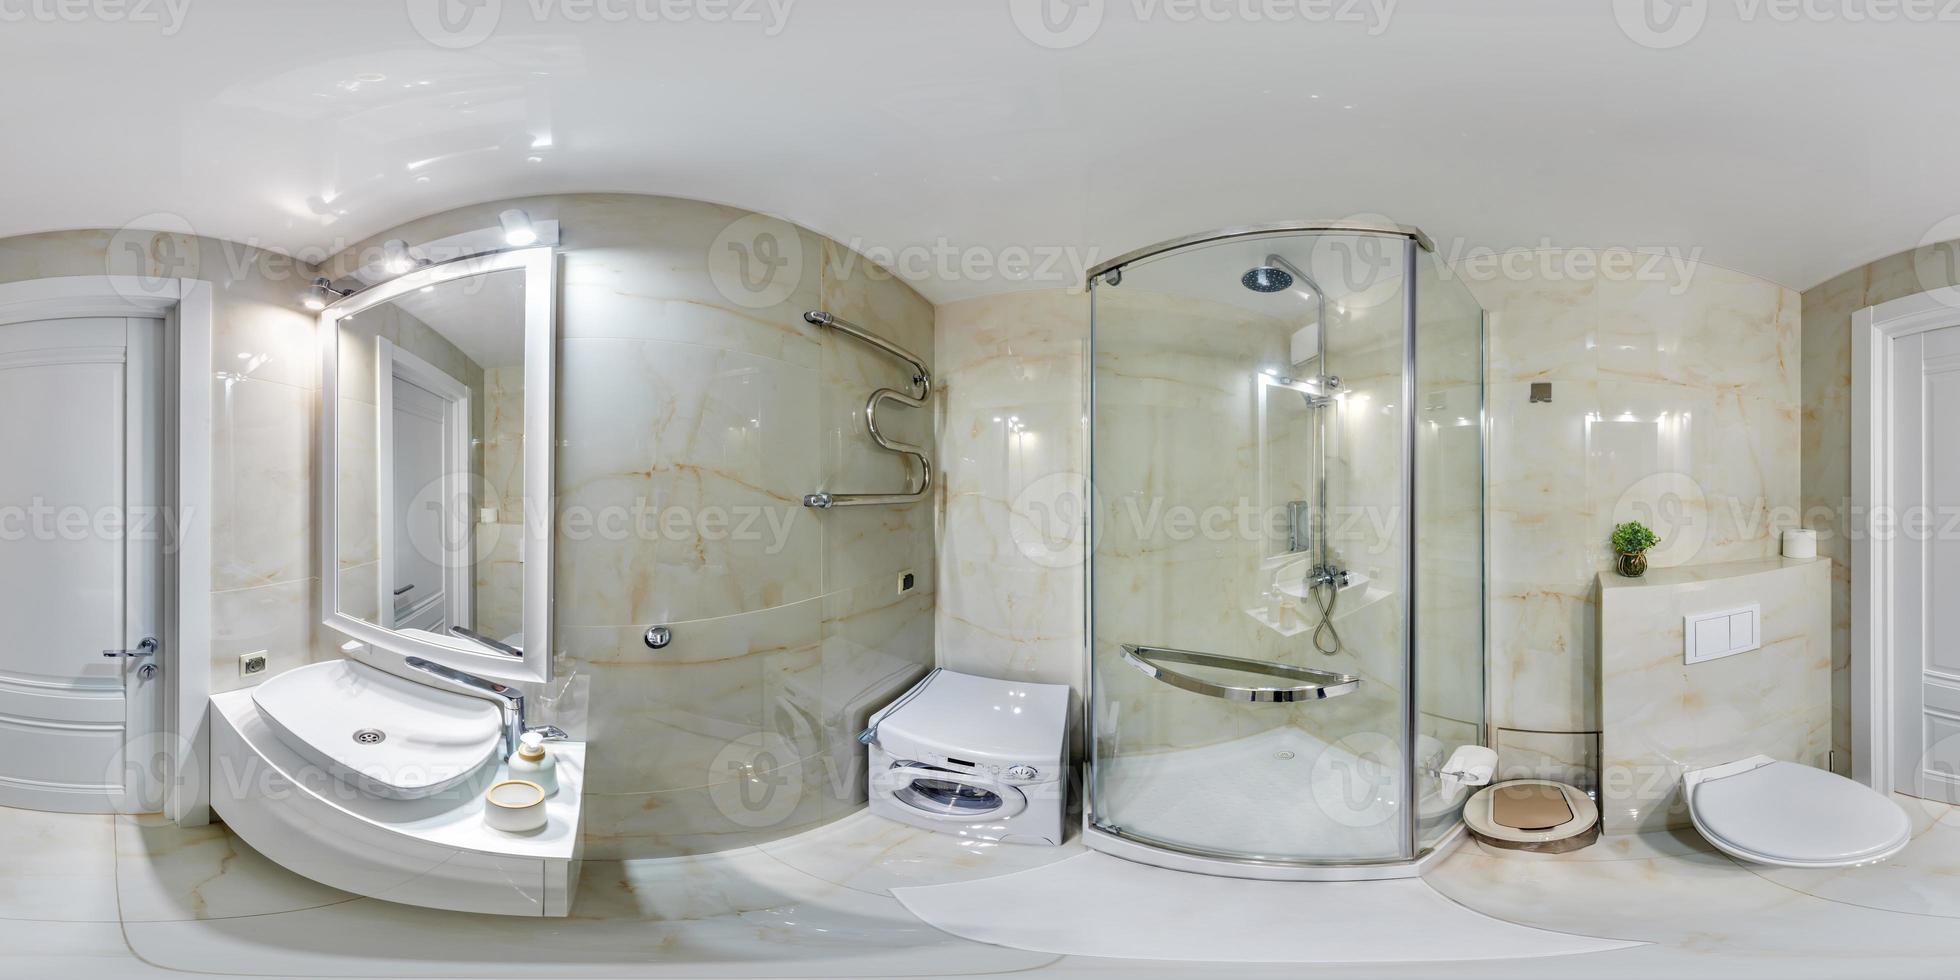 wit naadloos 360 hdri panorama in interieur van duur badkamer in modern vlak appartementen met wastafel in equirectangular projectie met zenit en nadir. vr ar inhoud foto